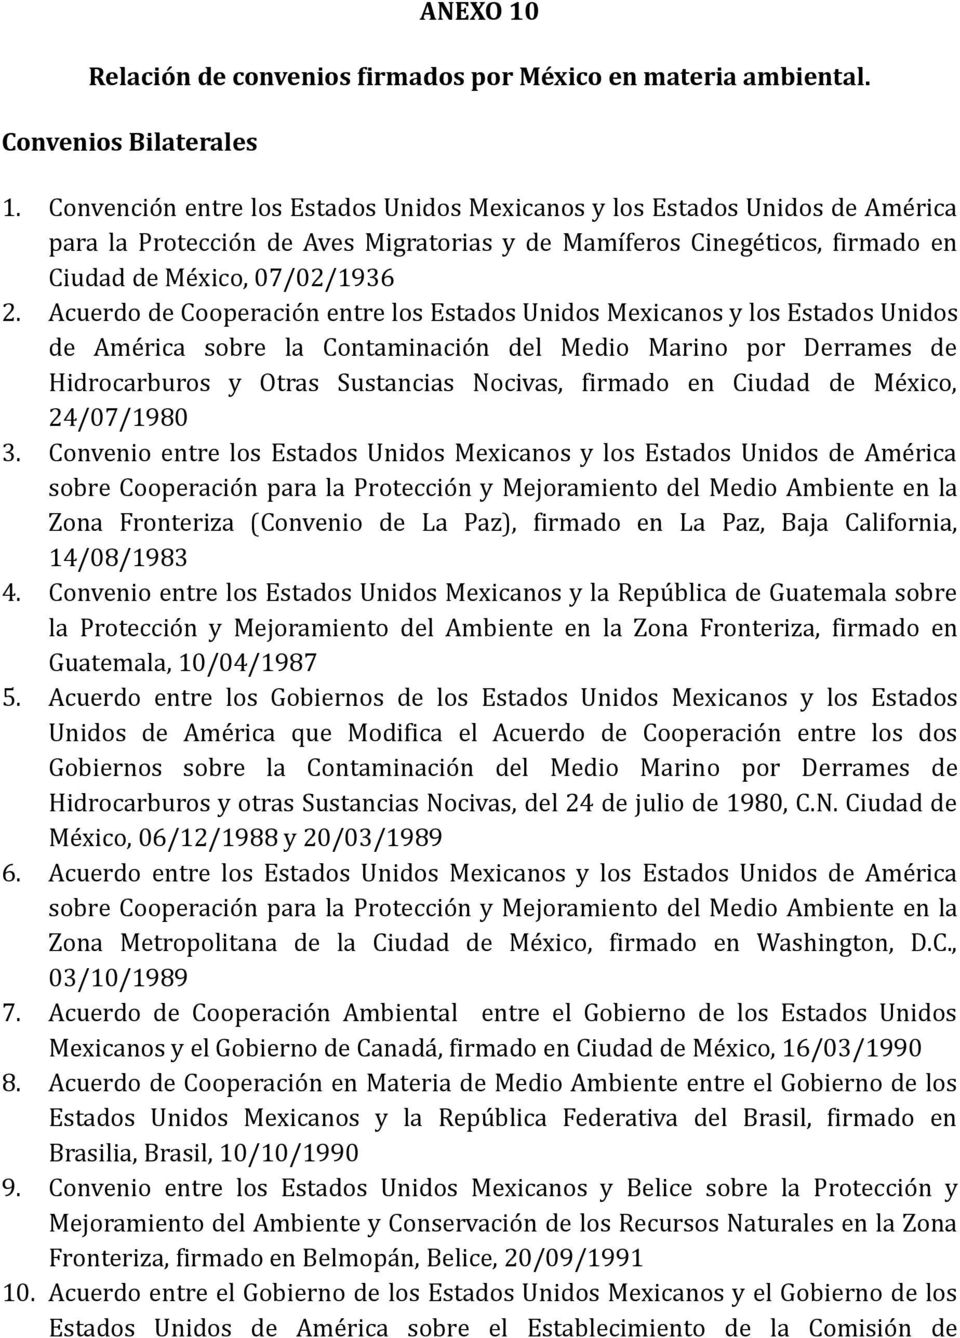 Acuerdo de Cooperacio n entre los Estados Unidos Mexicanos y los Estados Unidos de Ame rica sobre la Contaminacio n del Medio Marino por Derrames de Hidrocarburos y Otras Sustancias Nocivas, firmado